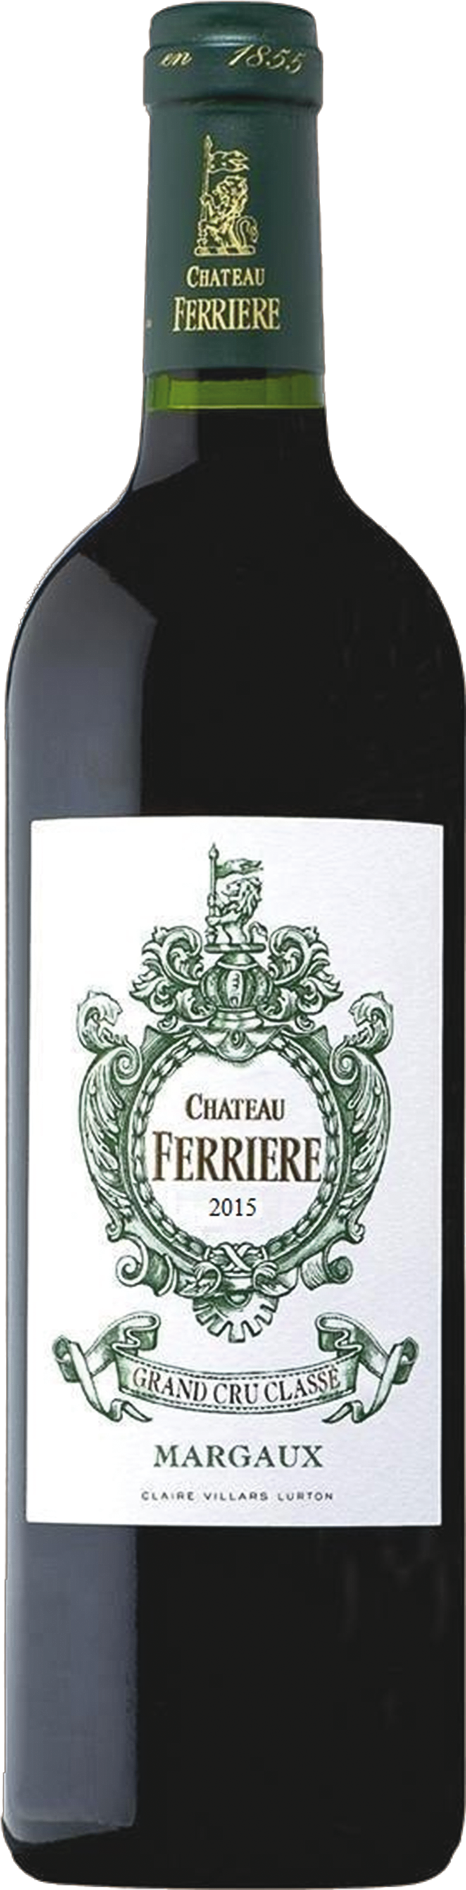 2015 Château Ferrière